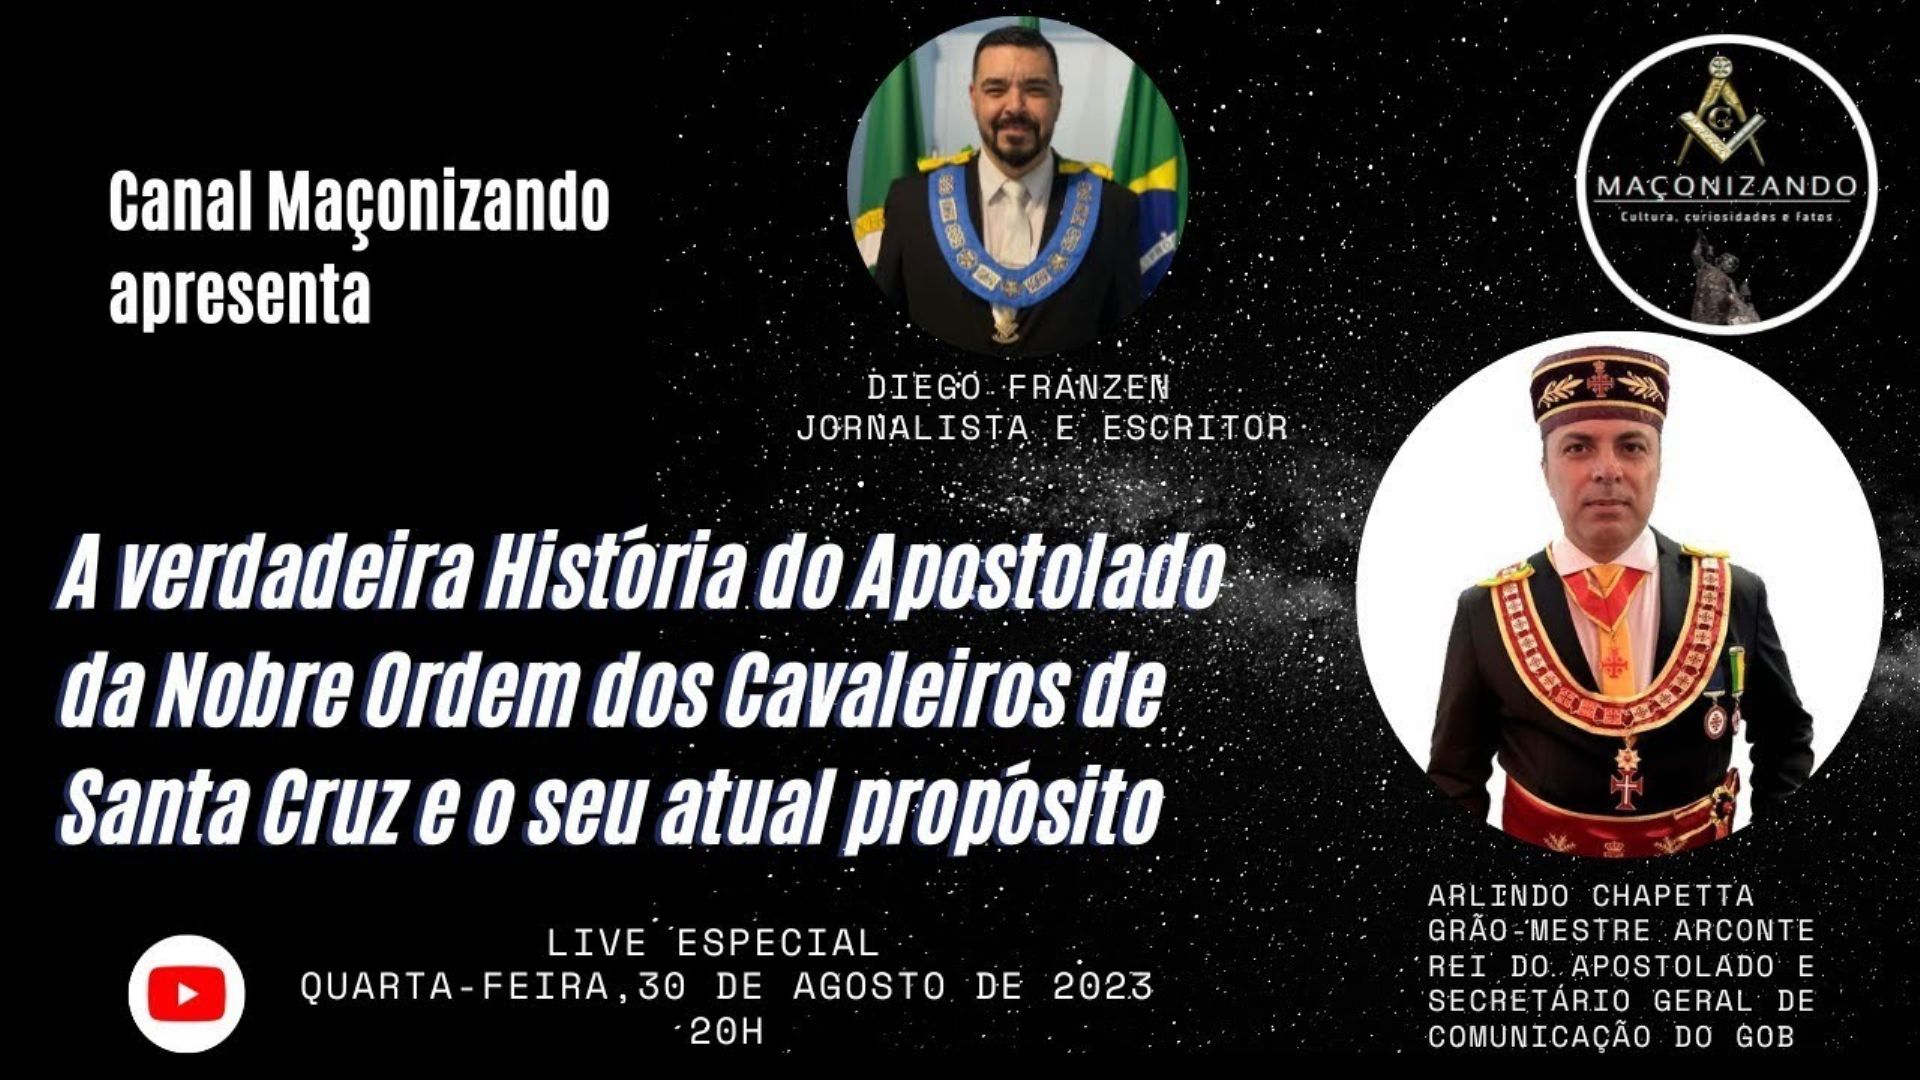 Live Especial sobre o APOSTOLADO DA NOBRE ORDEM DOS CAVALEIROS DE SANTA CRUZ